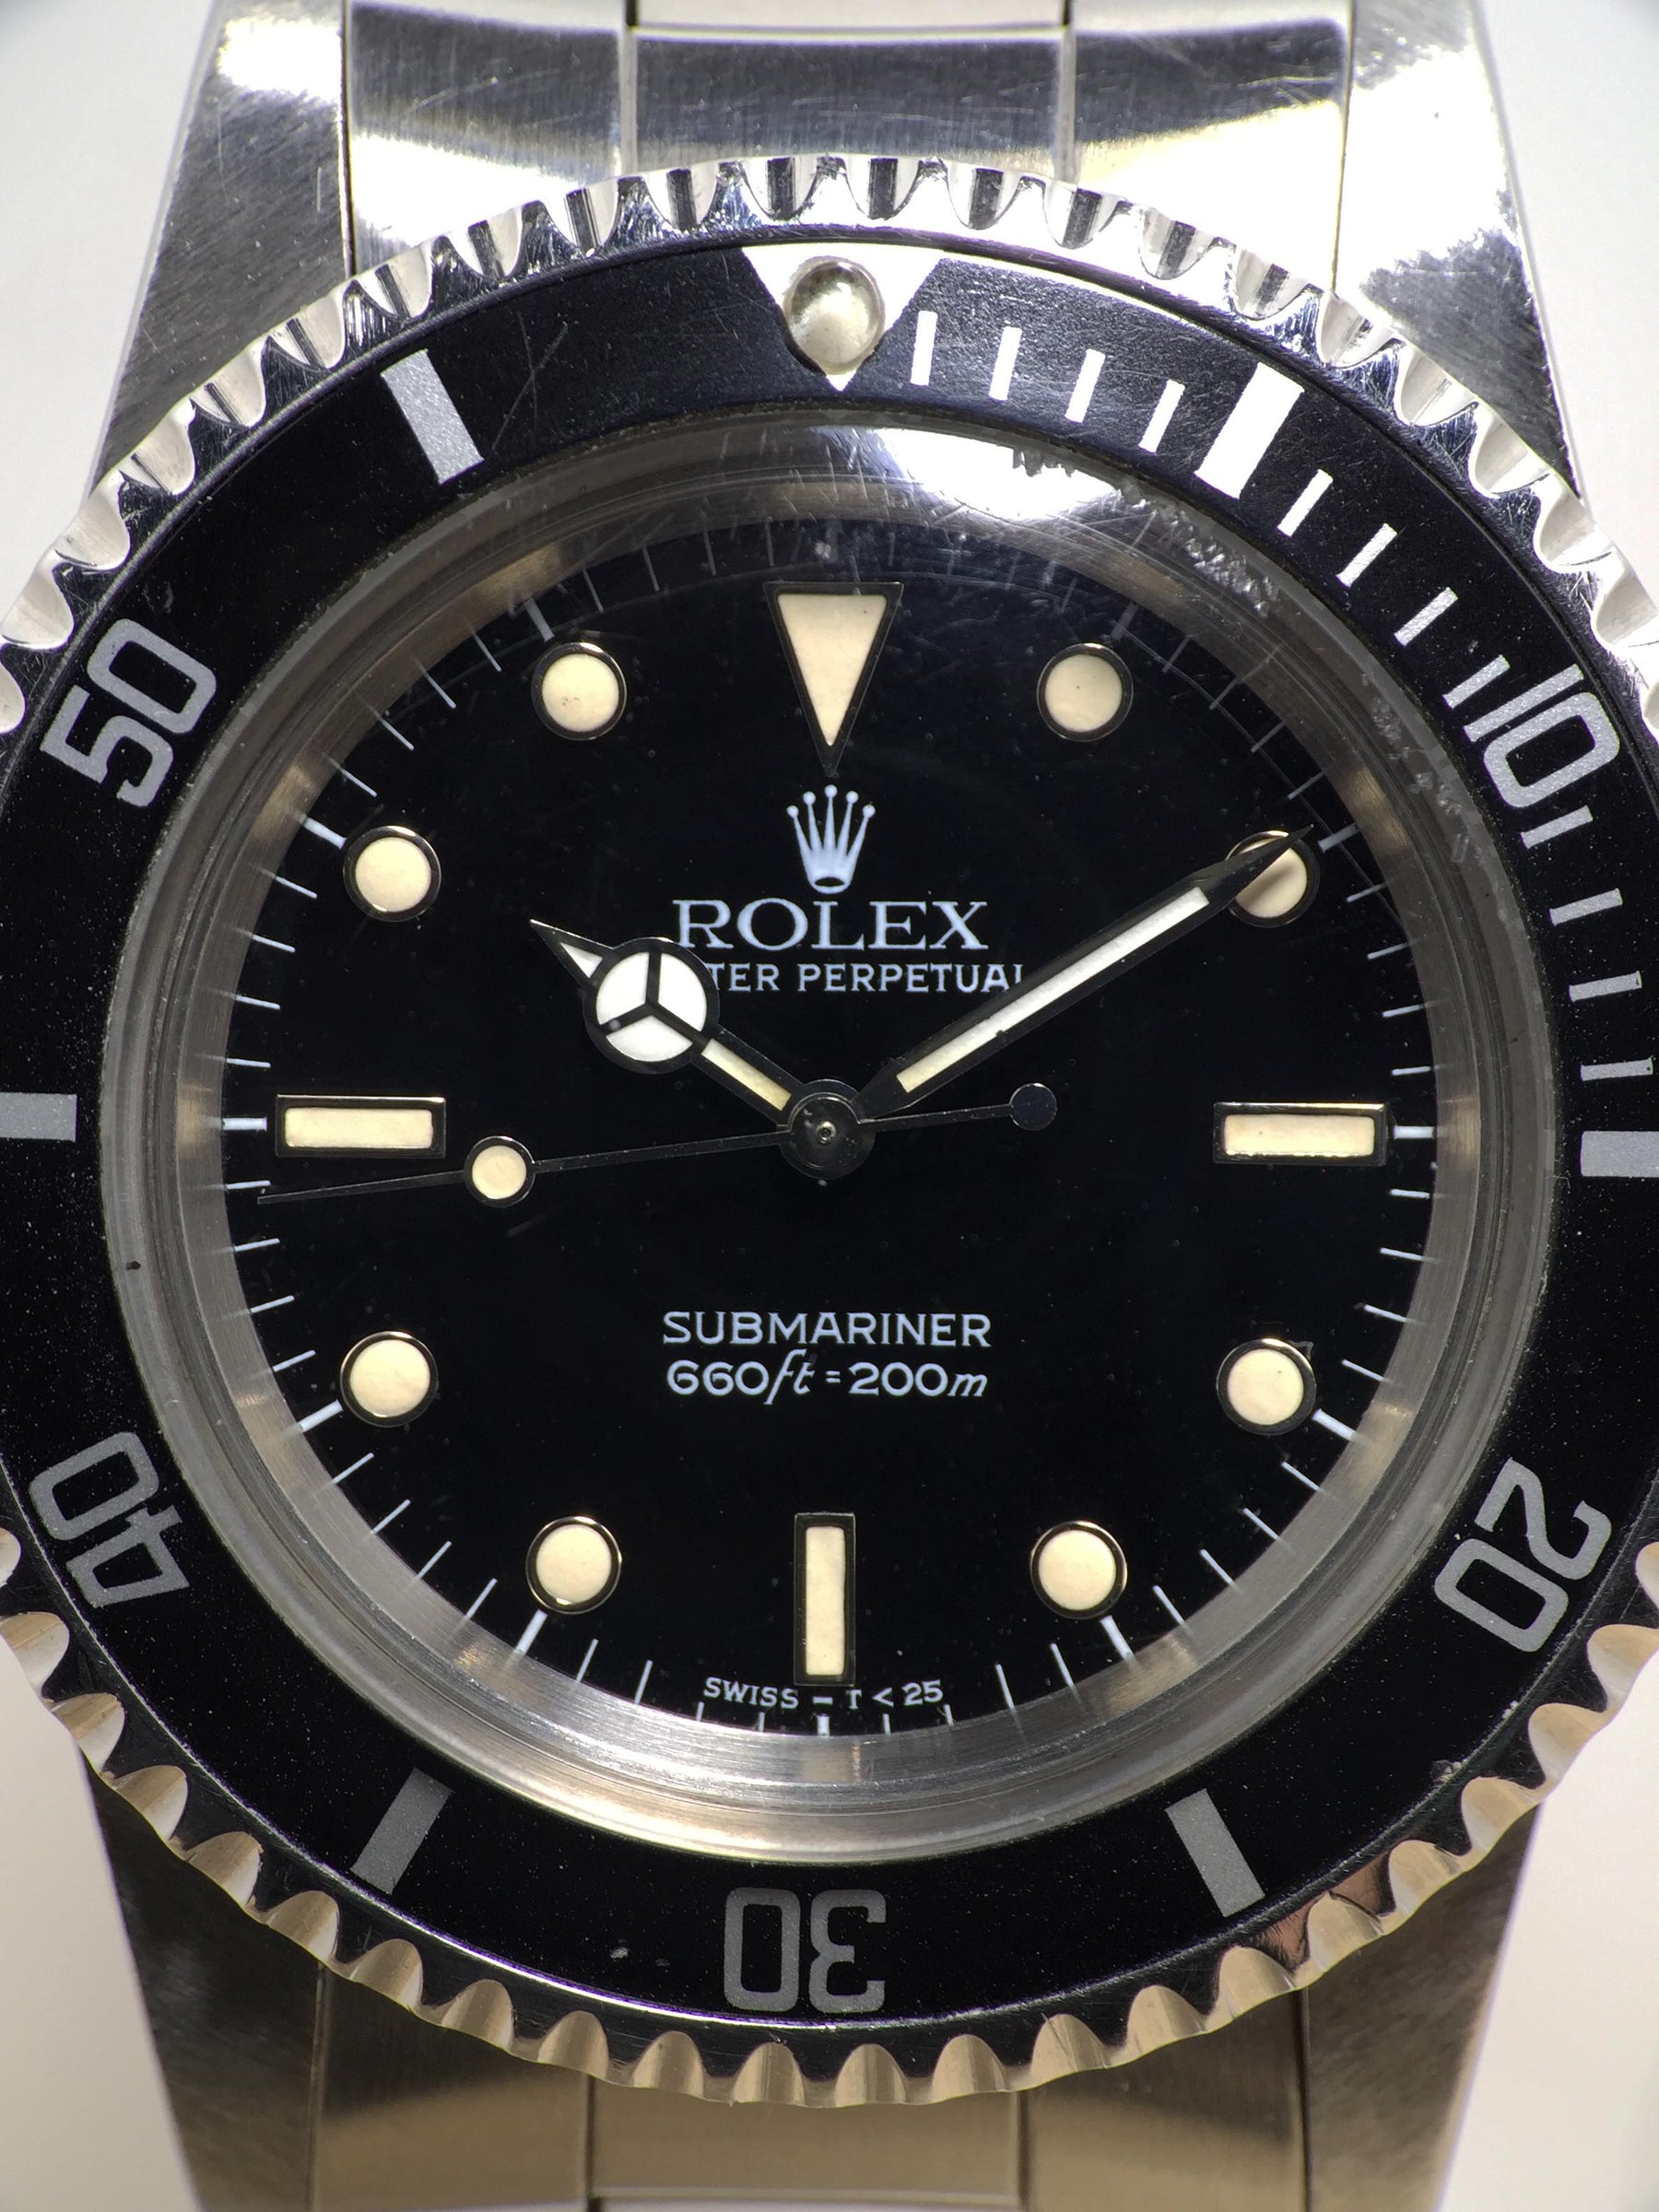 1986 Rolex Submariner Ref. 5513